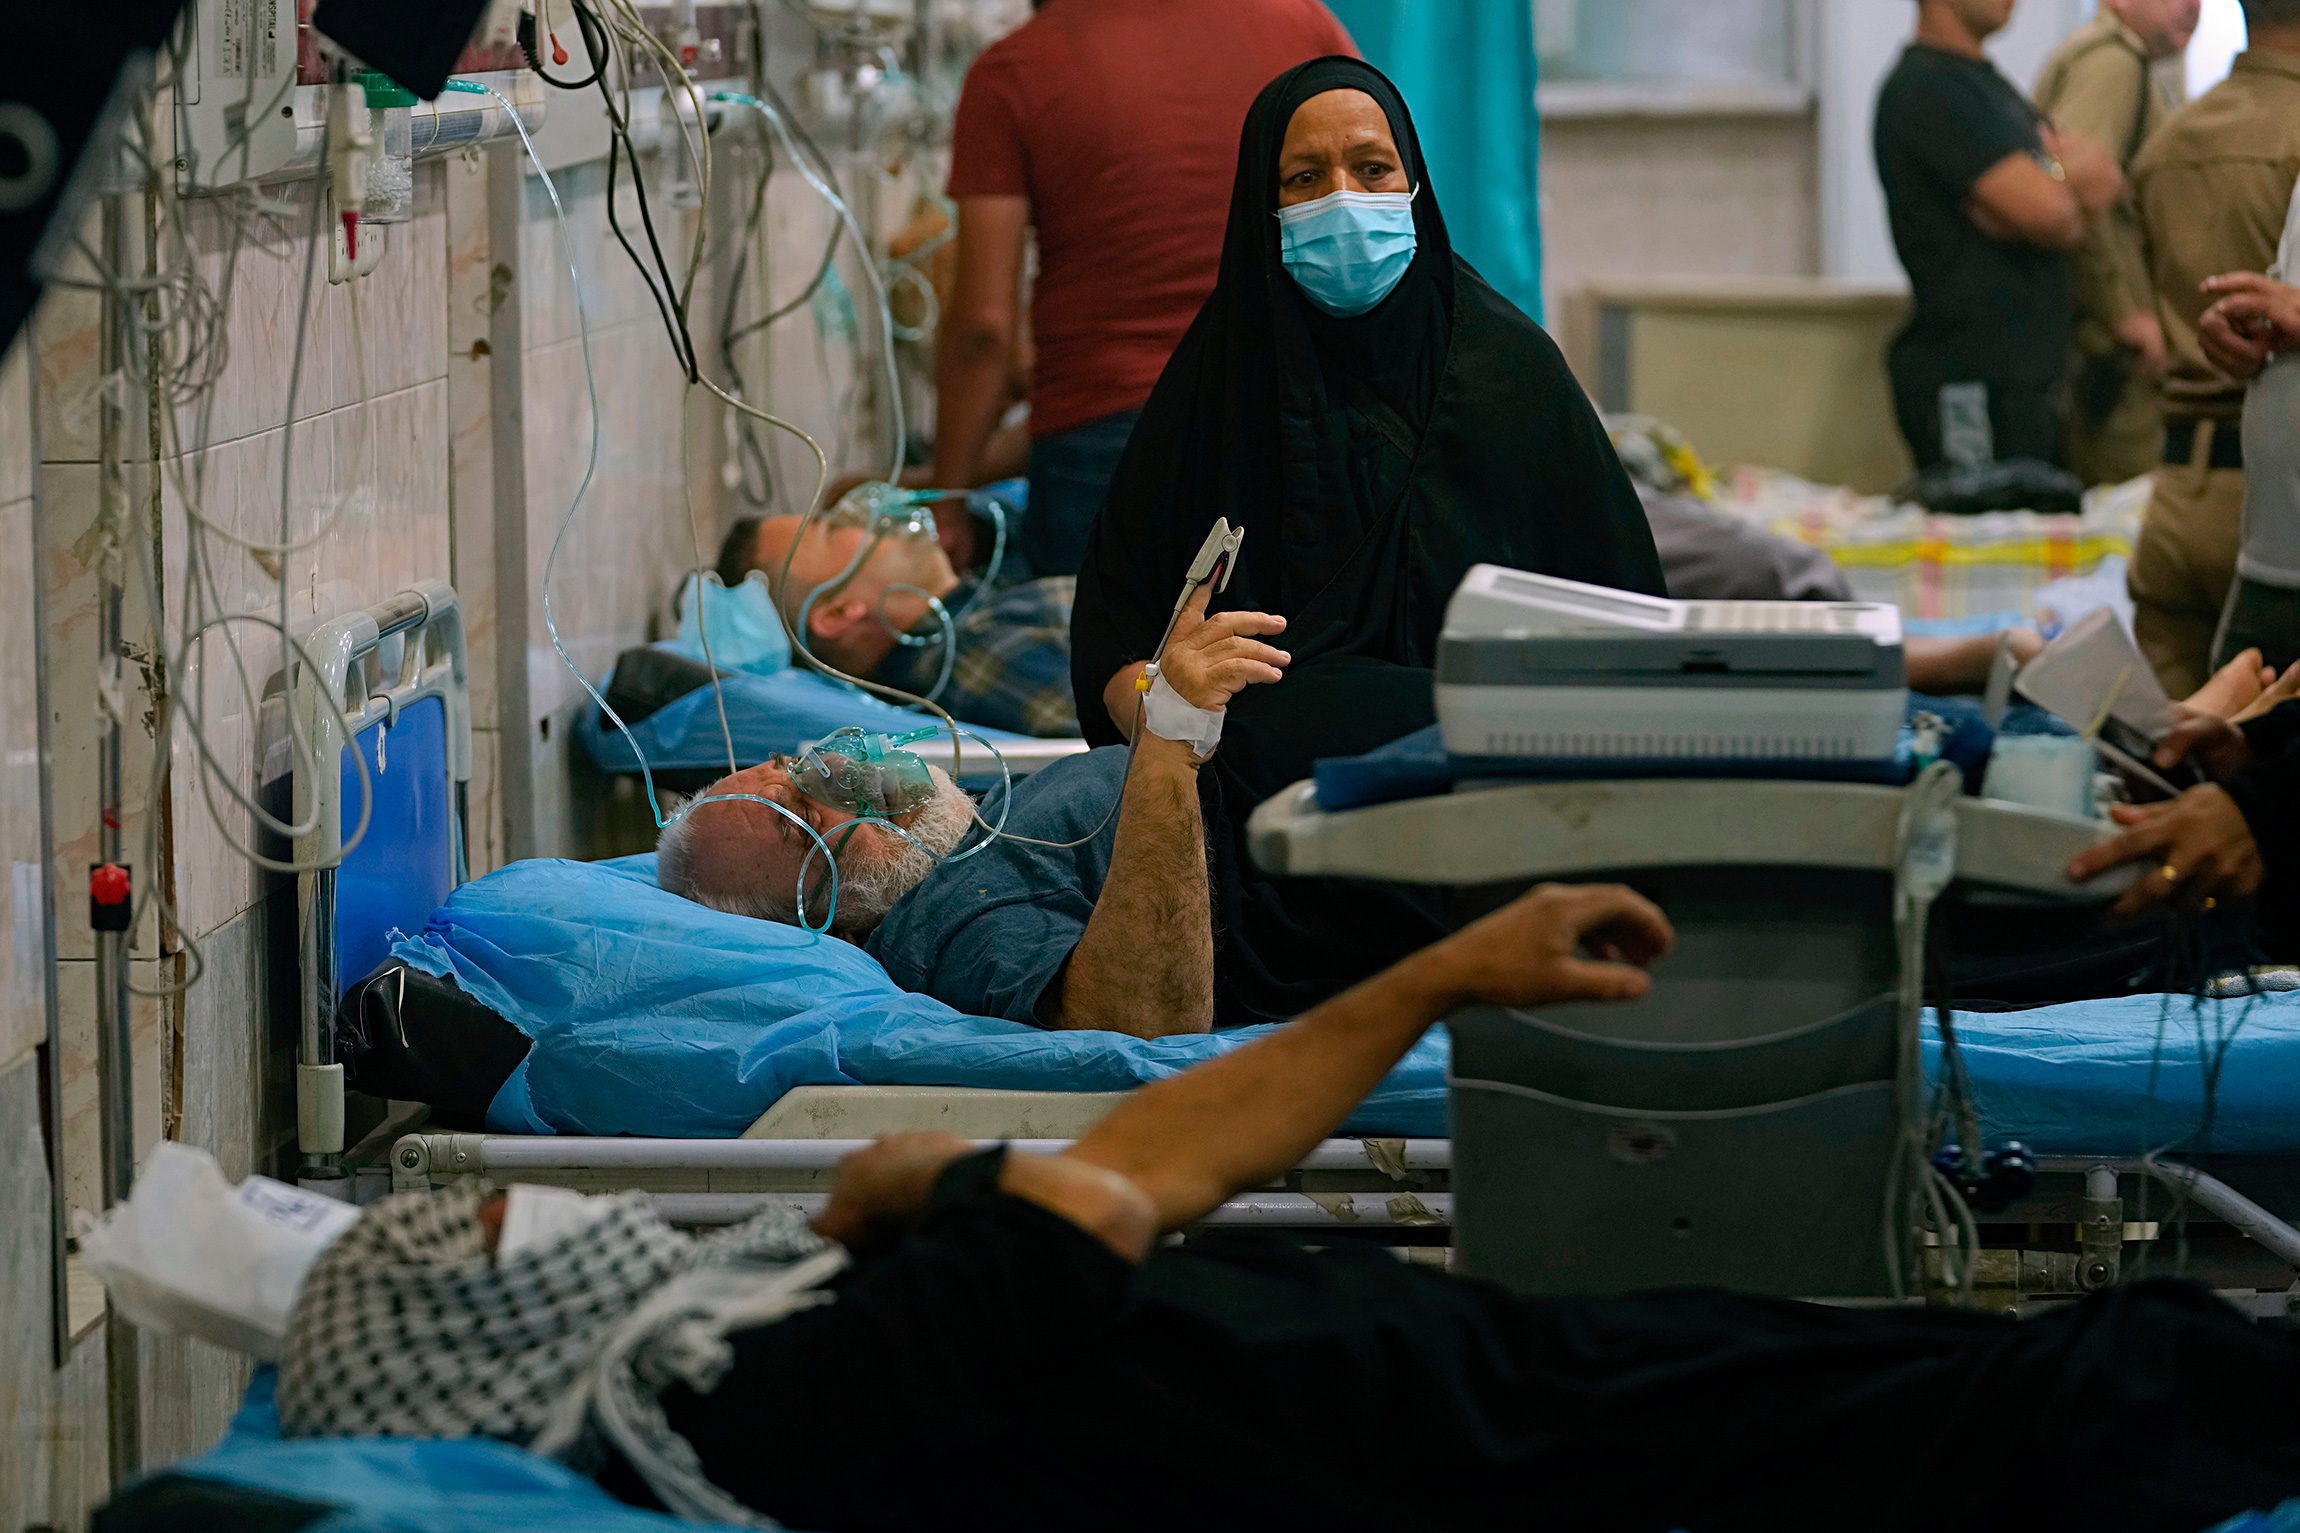 На фото: больница в Багдаде, Ирак, 23 мая 2022 года.

Врачи объясняли, что пыль и песок, разносимые ветром, влияют не только на видимость, но и на здоровье граждан. Во время подобных катаклизмов&nbsp;многие пациенты обращаются за медицинской помощью по поводу респираторных заболеваний. Особой опасности подвержены беременные женщины, дети, пожилые люди и те, кто работает на открытом воздухе. Крупные частицы пыли могут раздражать слизистые и вызывать аллергические реакции. Также ухудшение состояния заметно у пациентов с хроническими заболеваниями сердечно-сосудистой системы, легких, с астмой